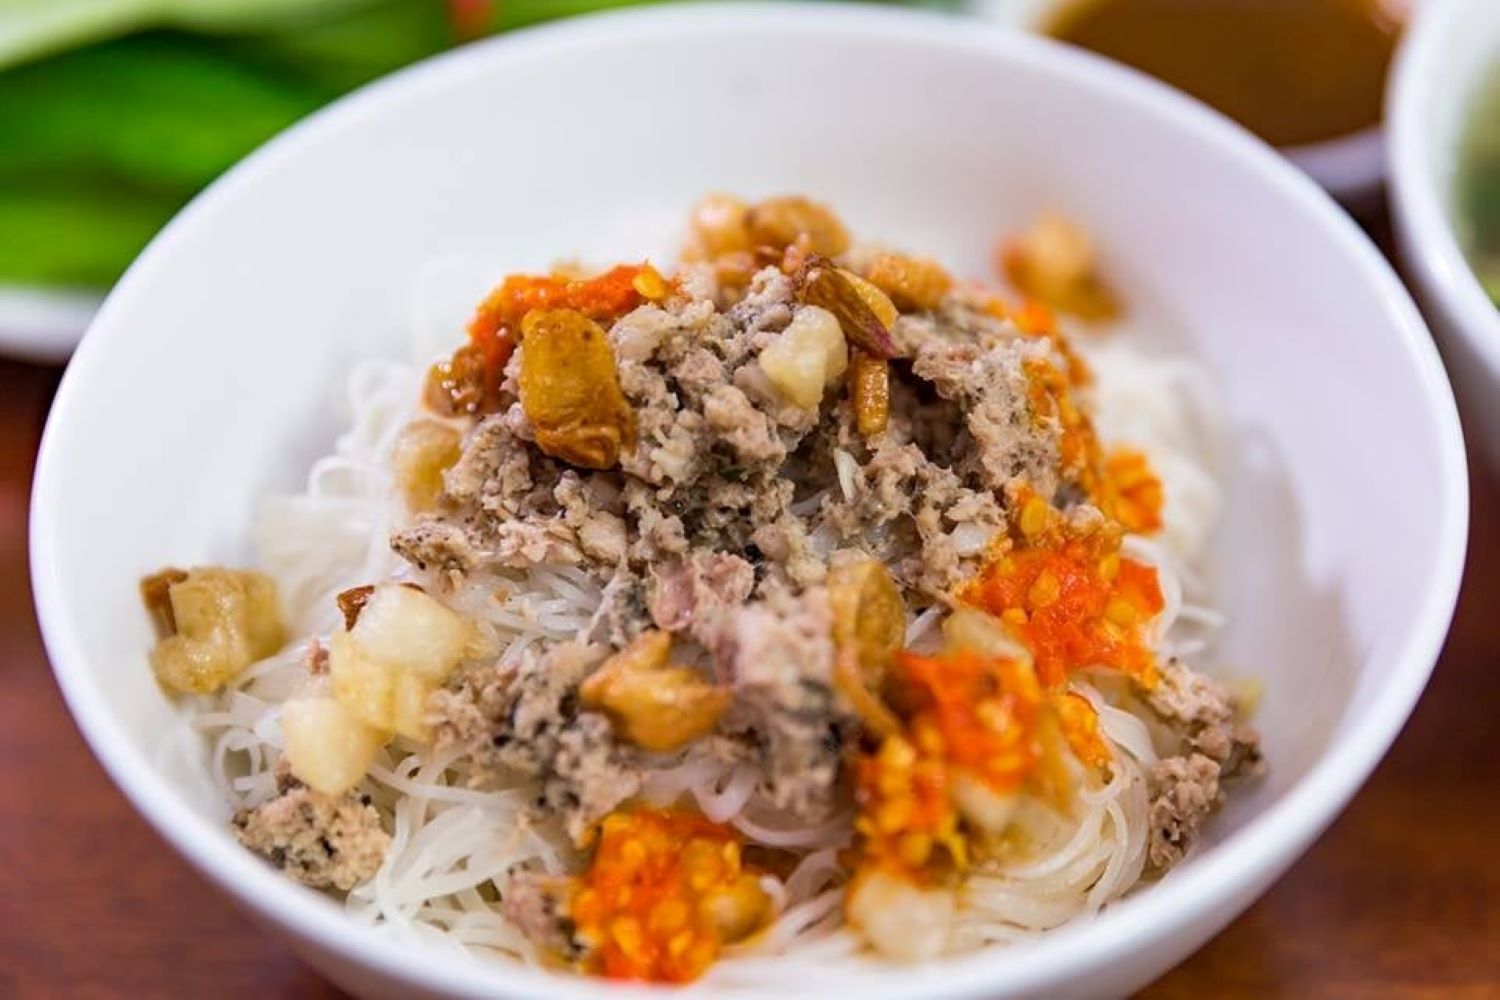 Trải nghiệm Phở Hồng, quán ăn bình dân nổi tiếng ở Gia Lai 5